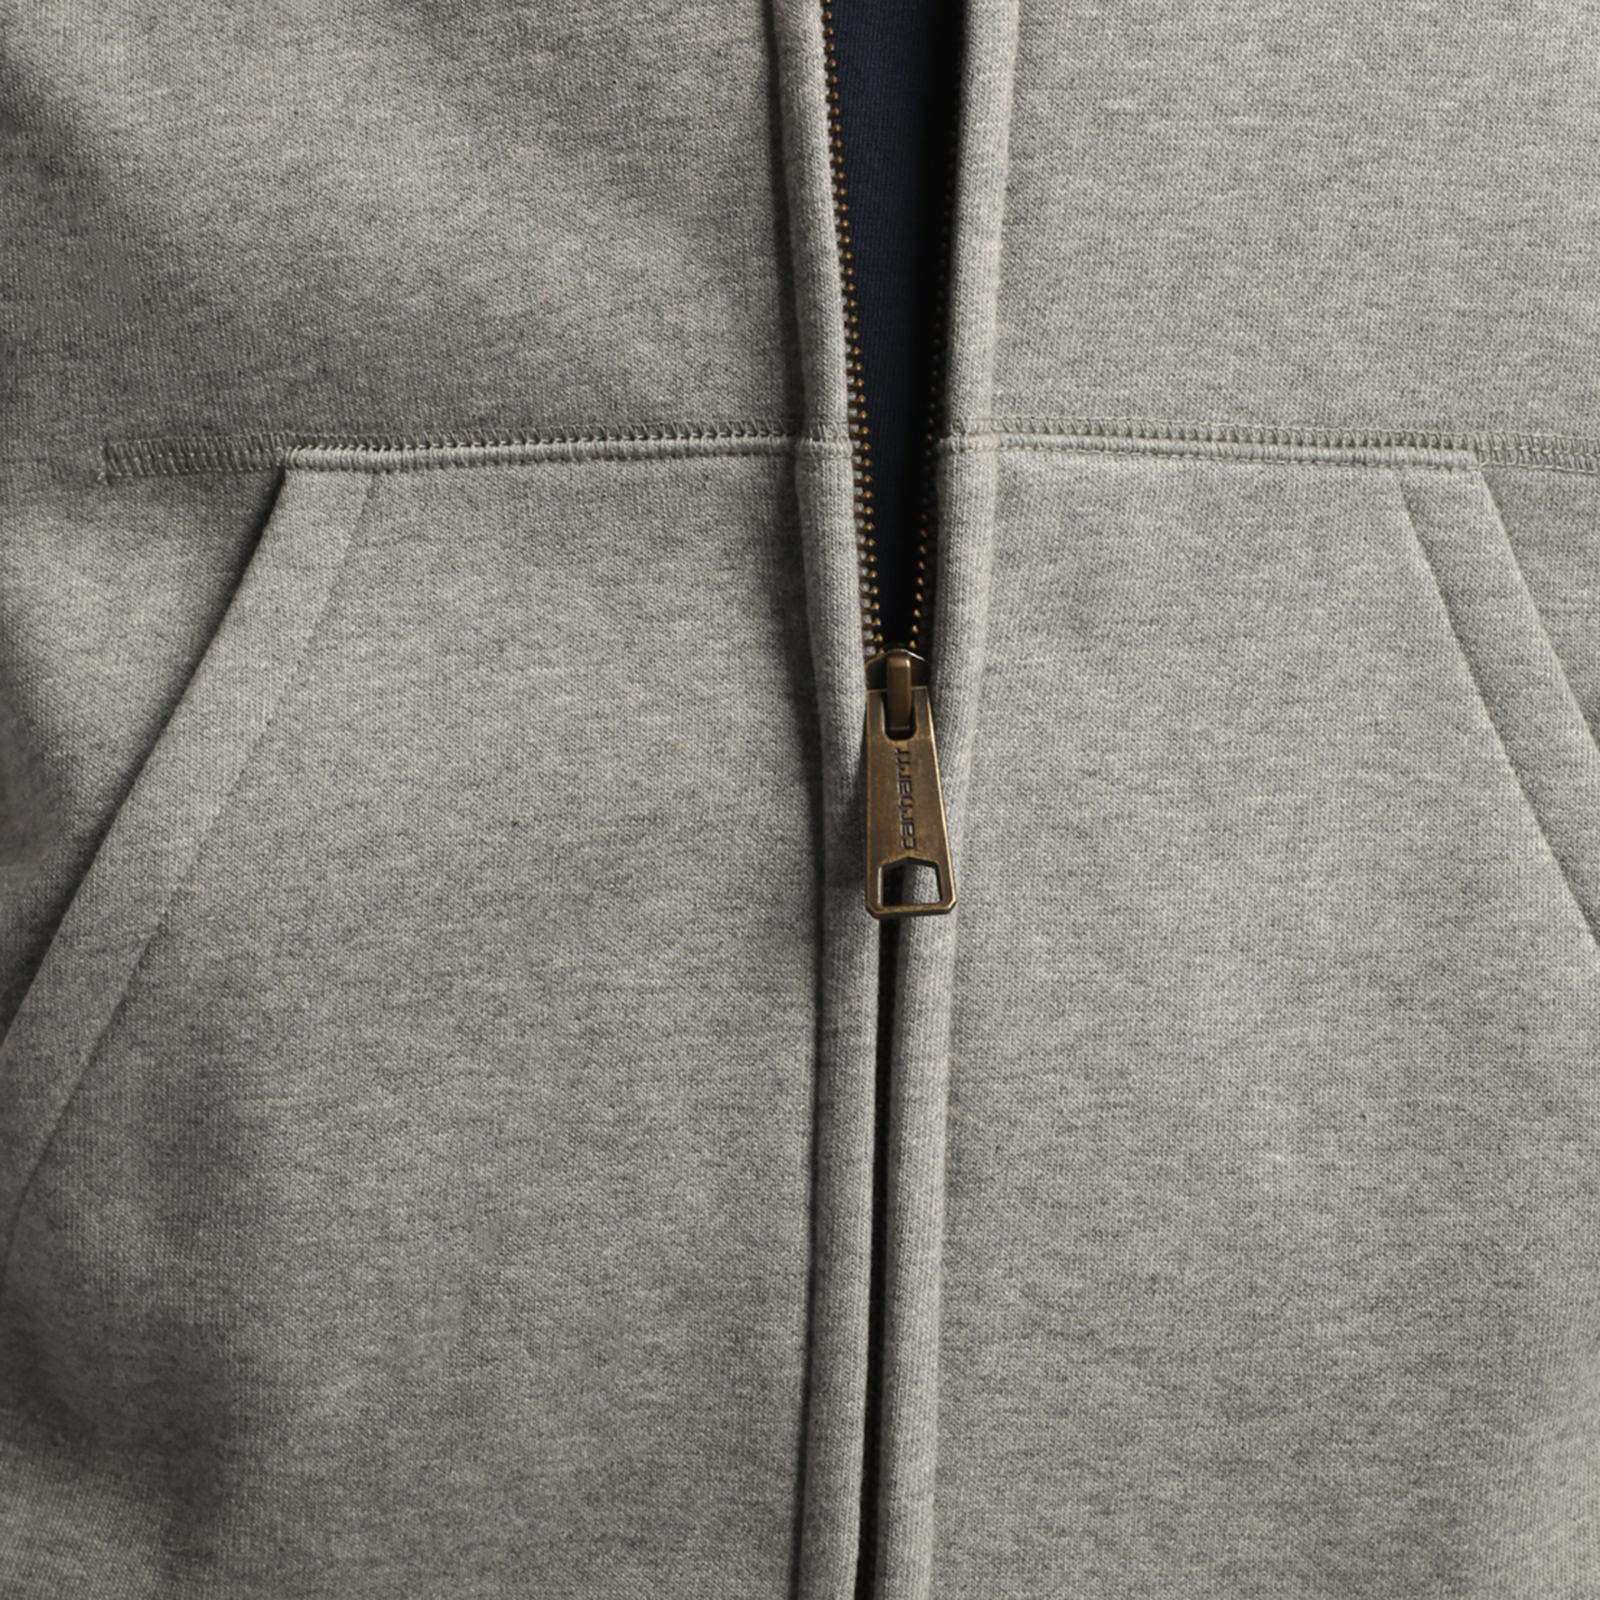 мужская толстовка Carhartt WIP Hooded Chase Jacket  (I026385-grey h/gold)  - цена, описание, фото 6